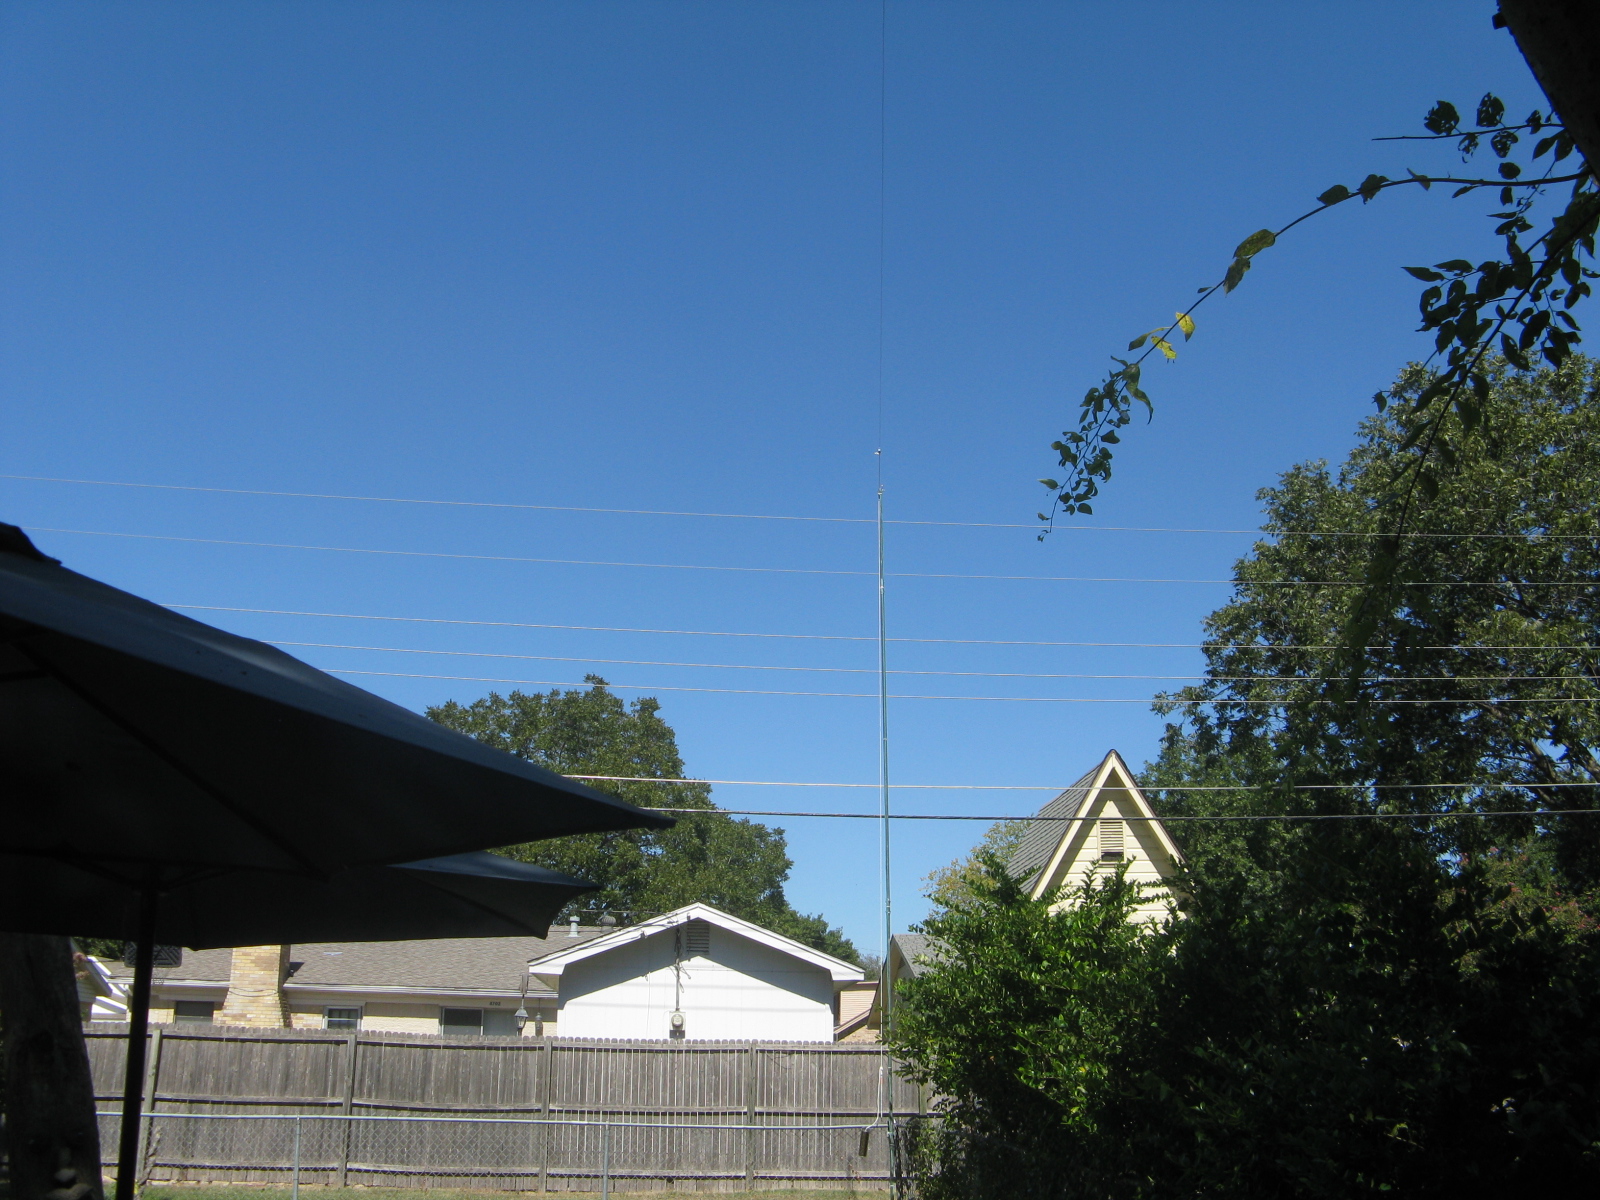 Antenna pole at back of yard